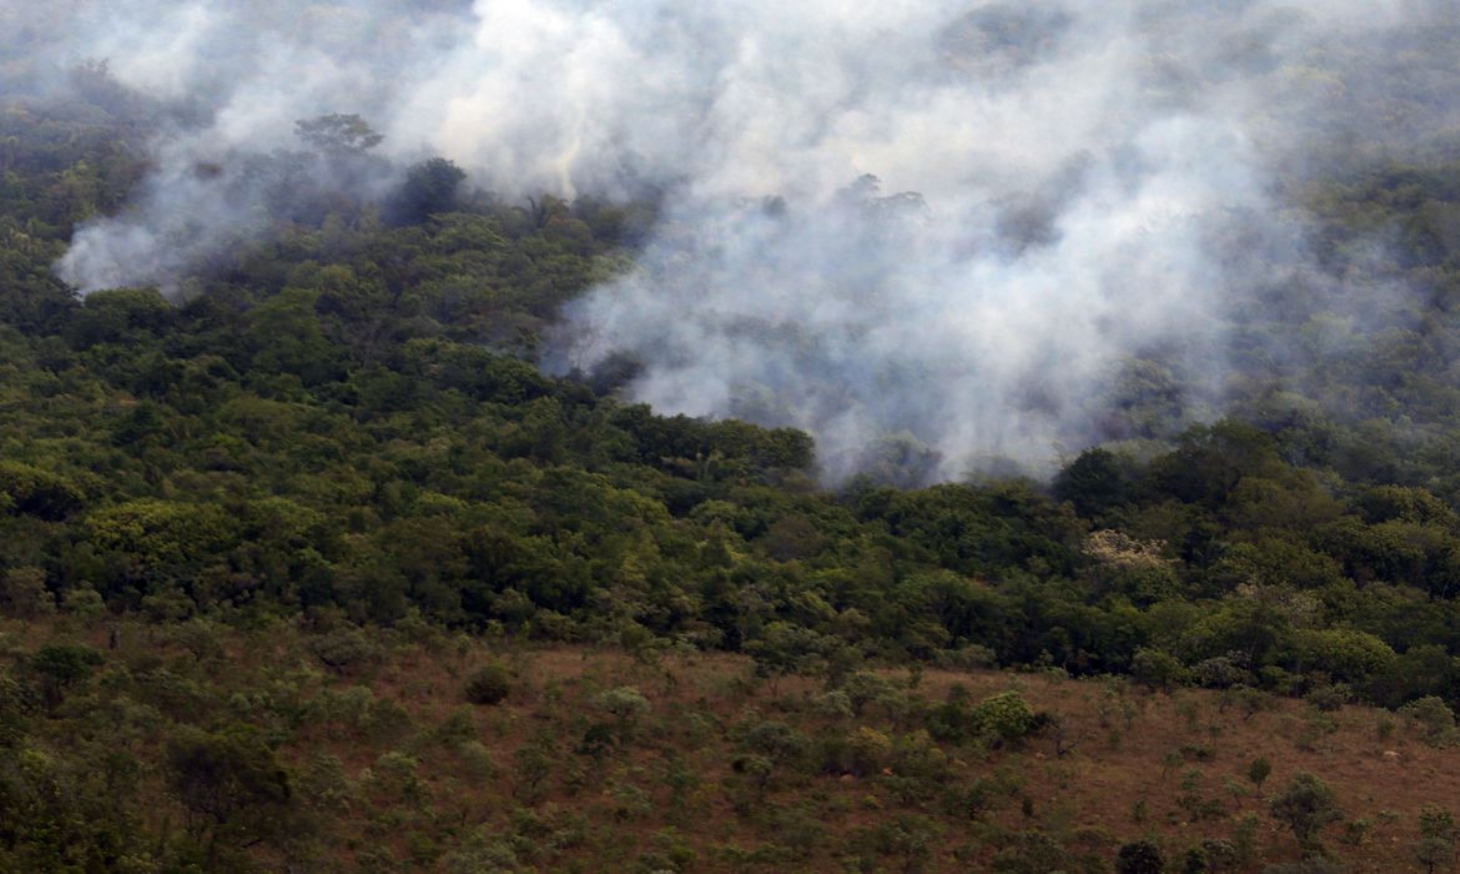 Decreto proíbe queimadas em todo o Brasil por 120 dias | Jornal da Orla